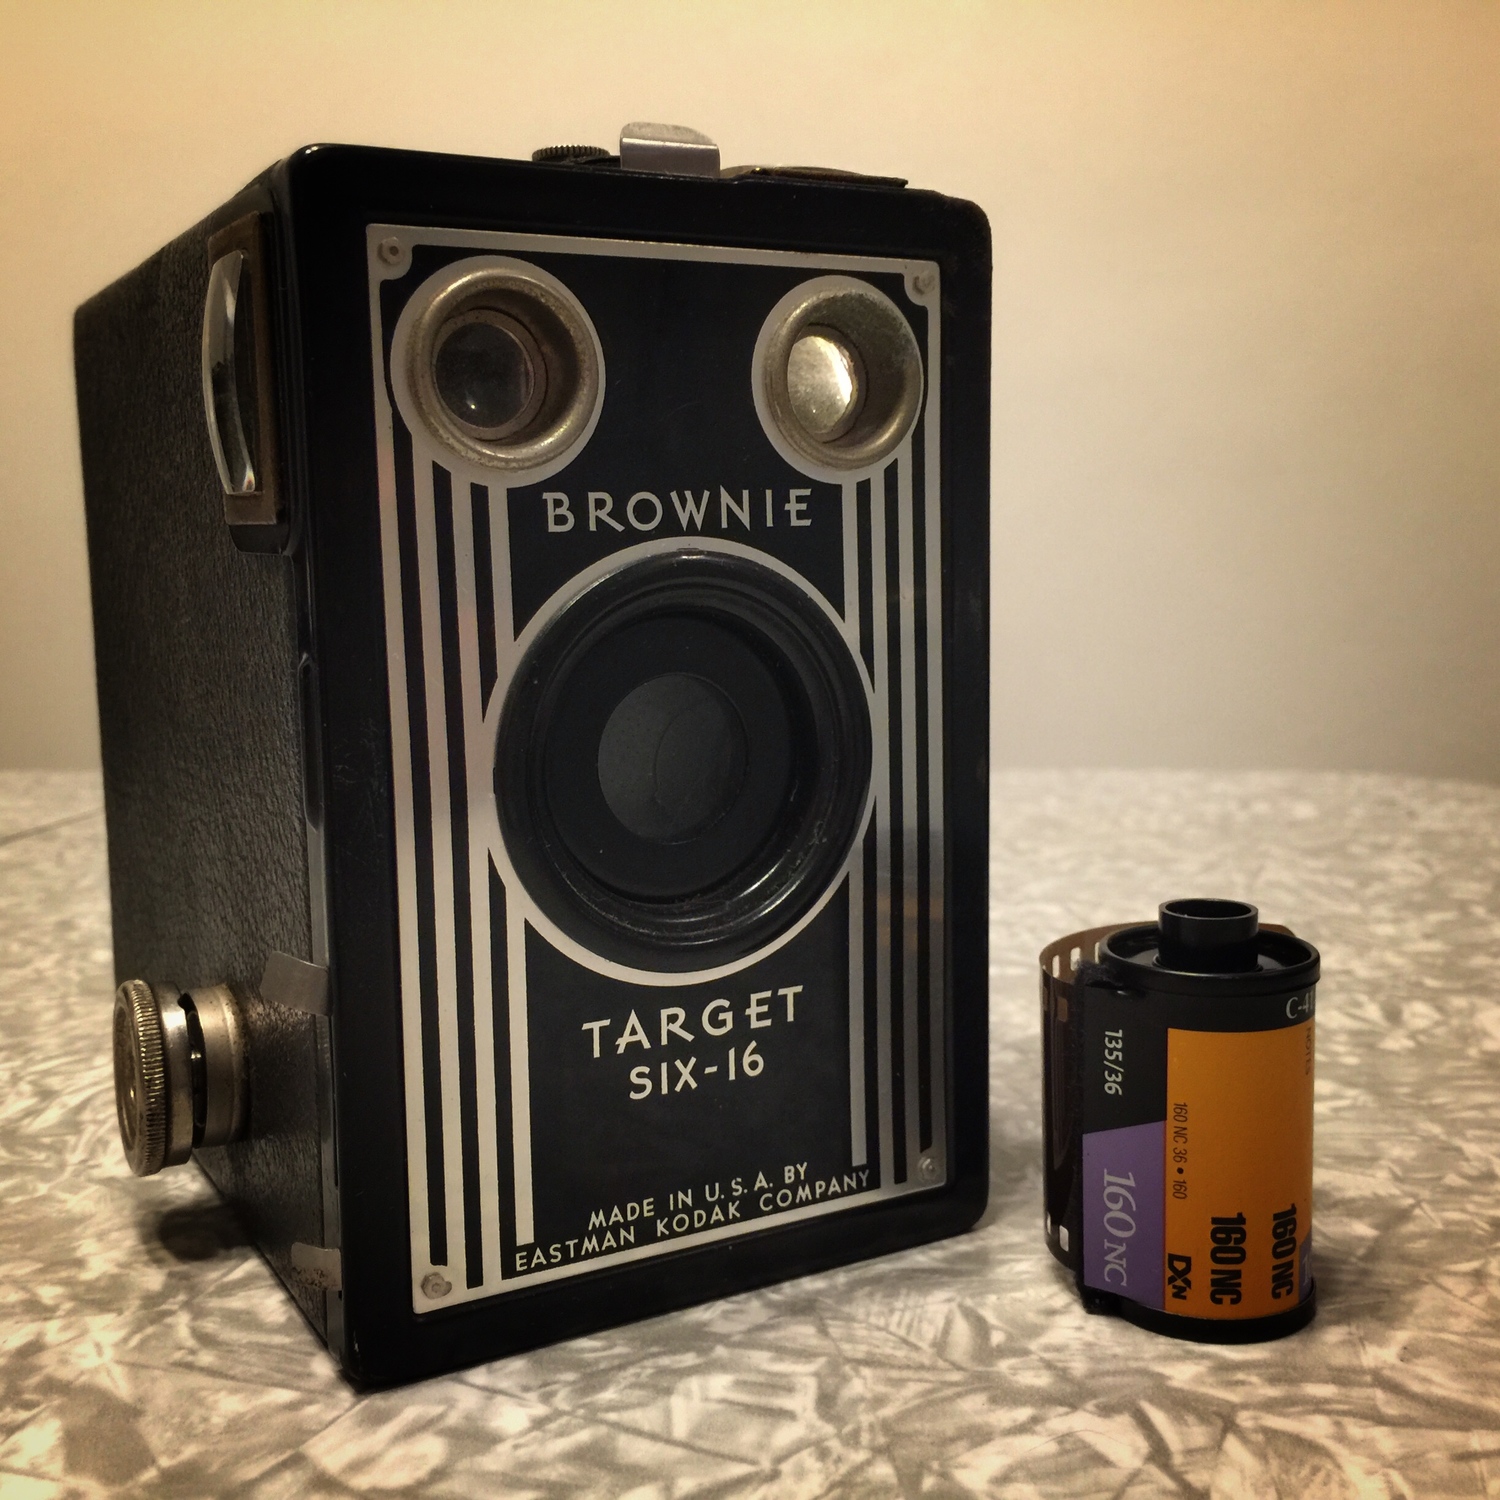 Kodak Brownie Target Six-16 - 52 Cameras, 52 Weeks — judy m boyle